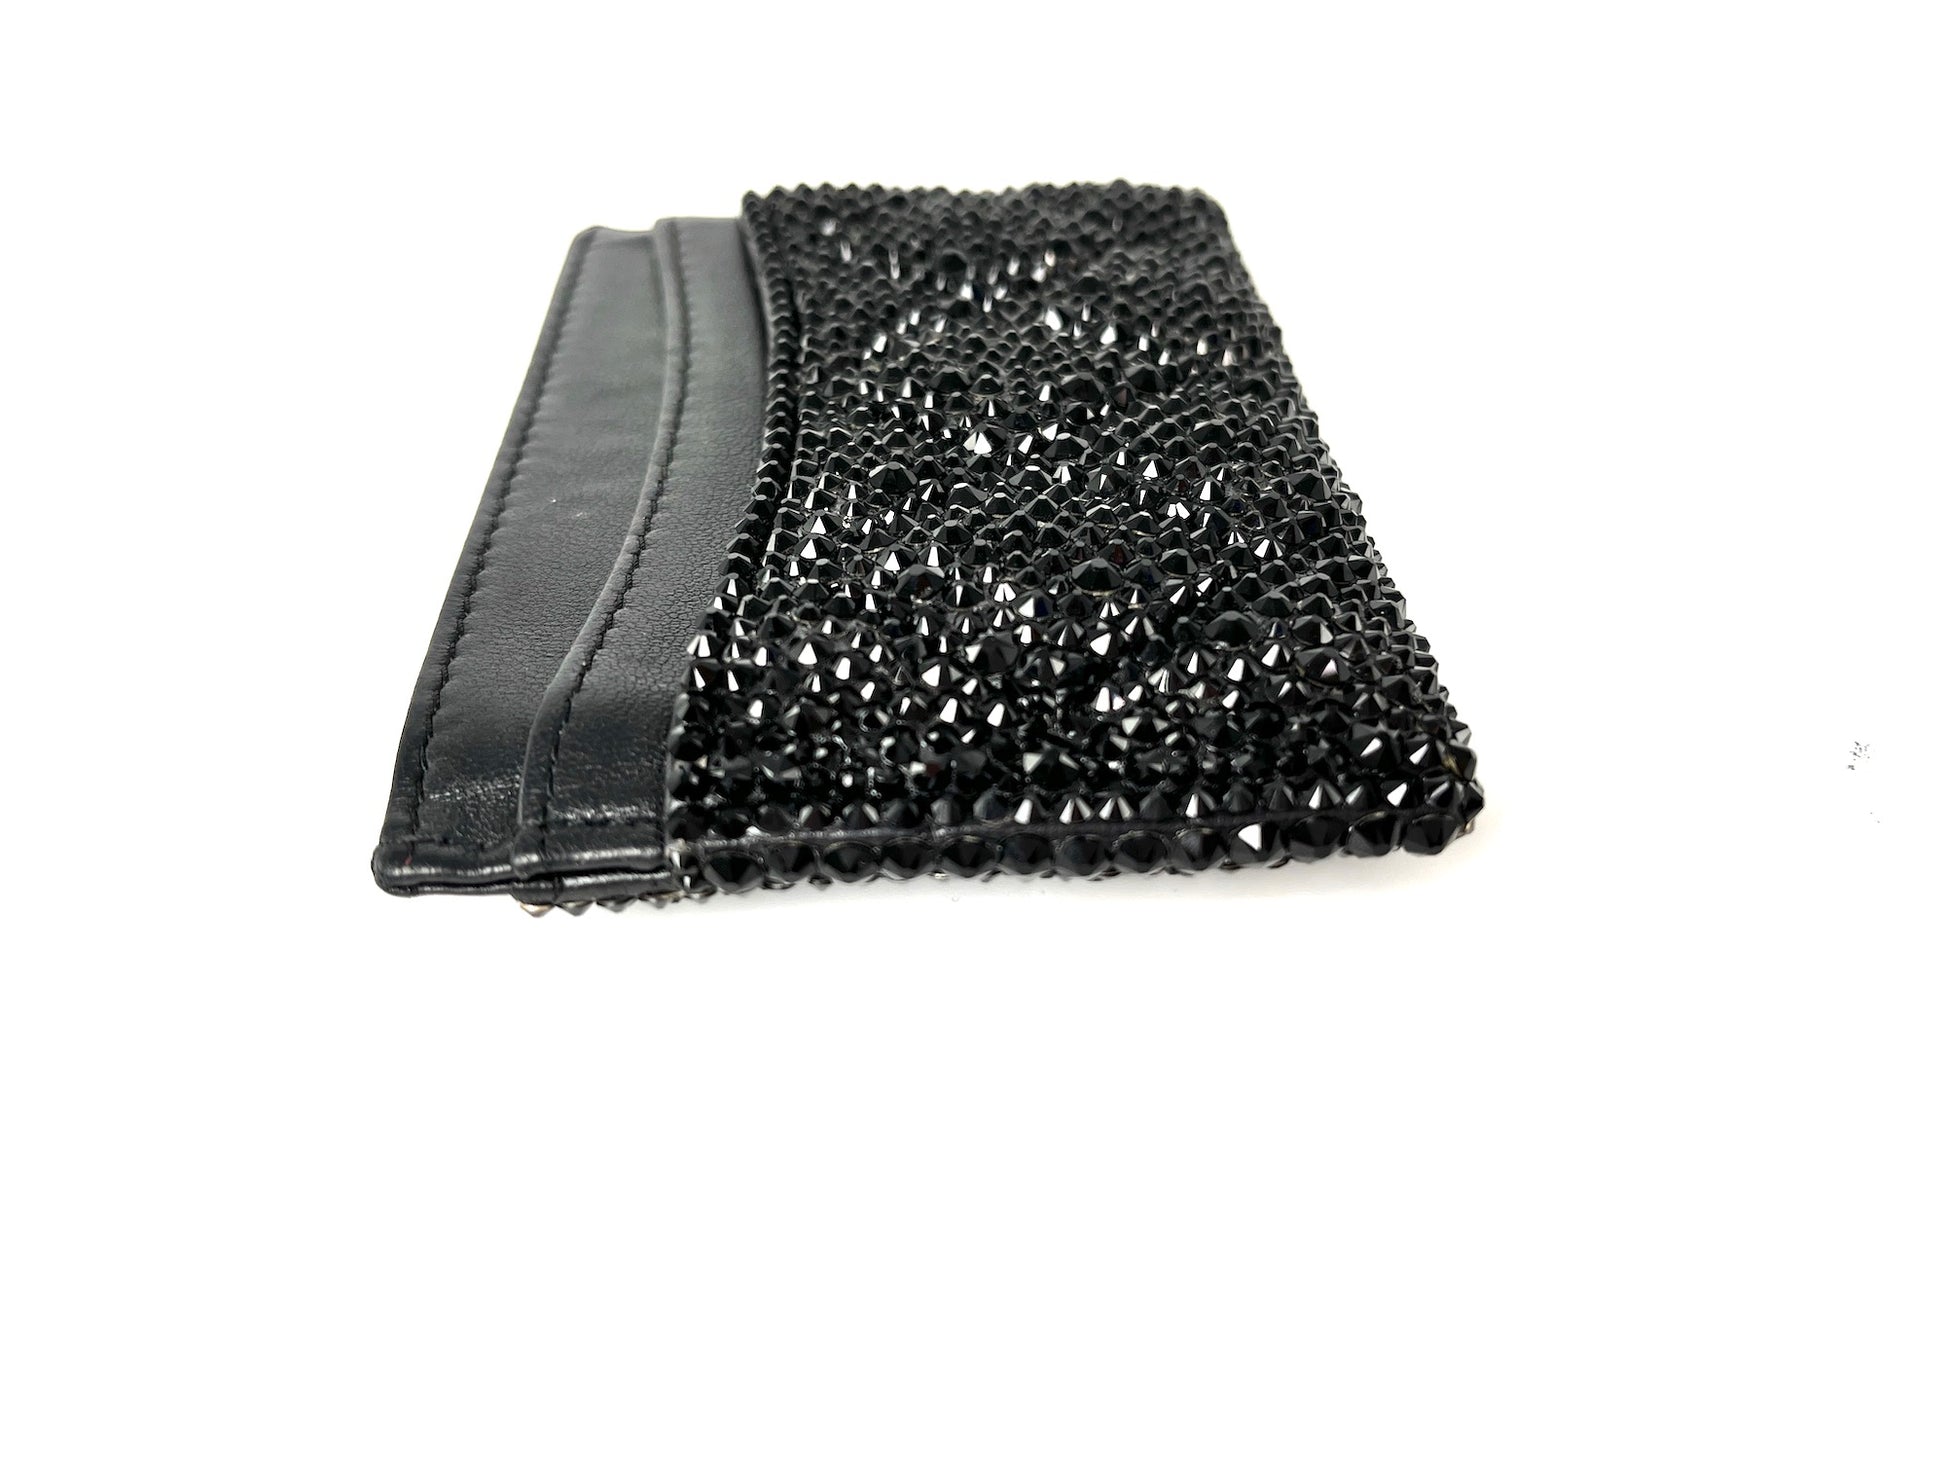 CHANEL Black Swarovski Crystal Leather Card Case Wallet